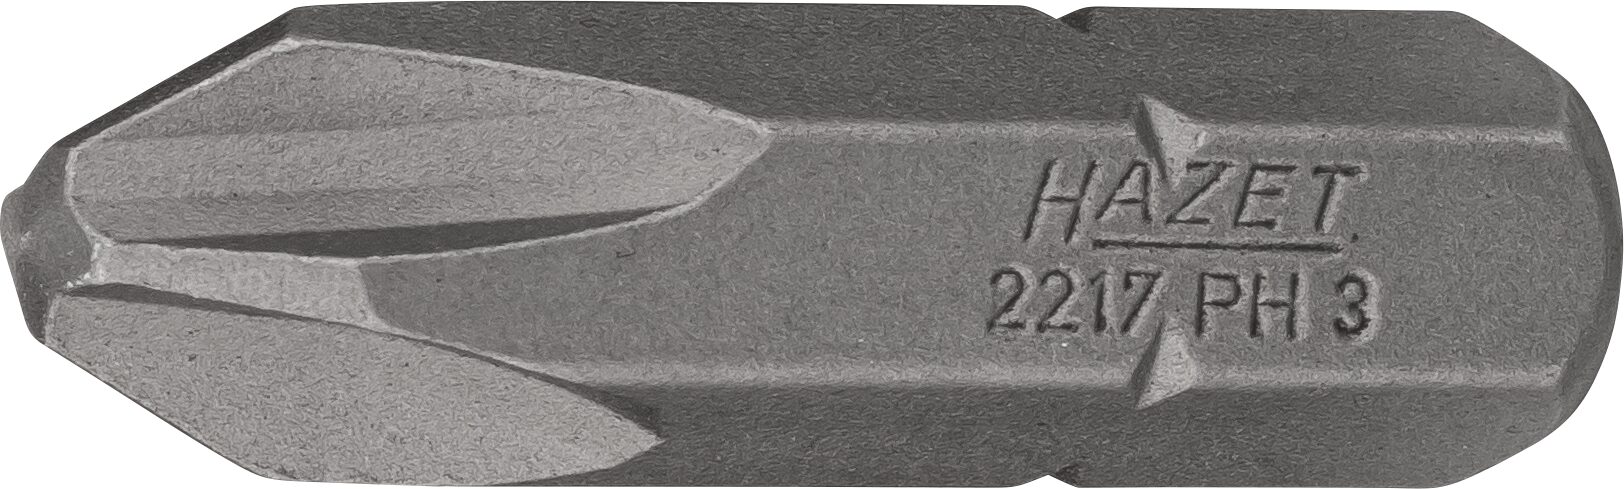 HAZET Bit 2217-PH3 · Sechskant massiv 8 (5/16 Zoll) · Kreuzschlitz Profil PH · PH3